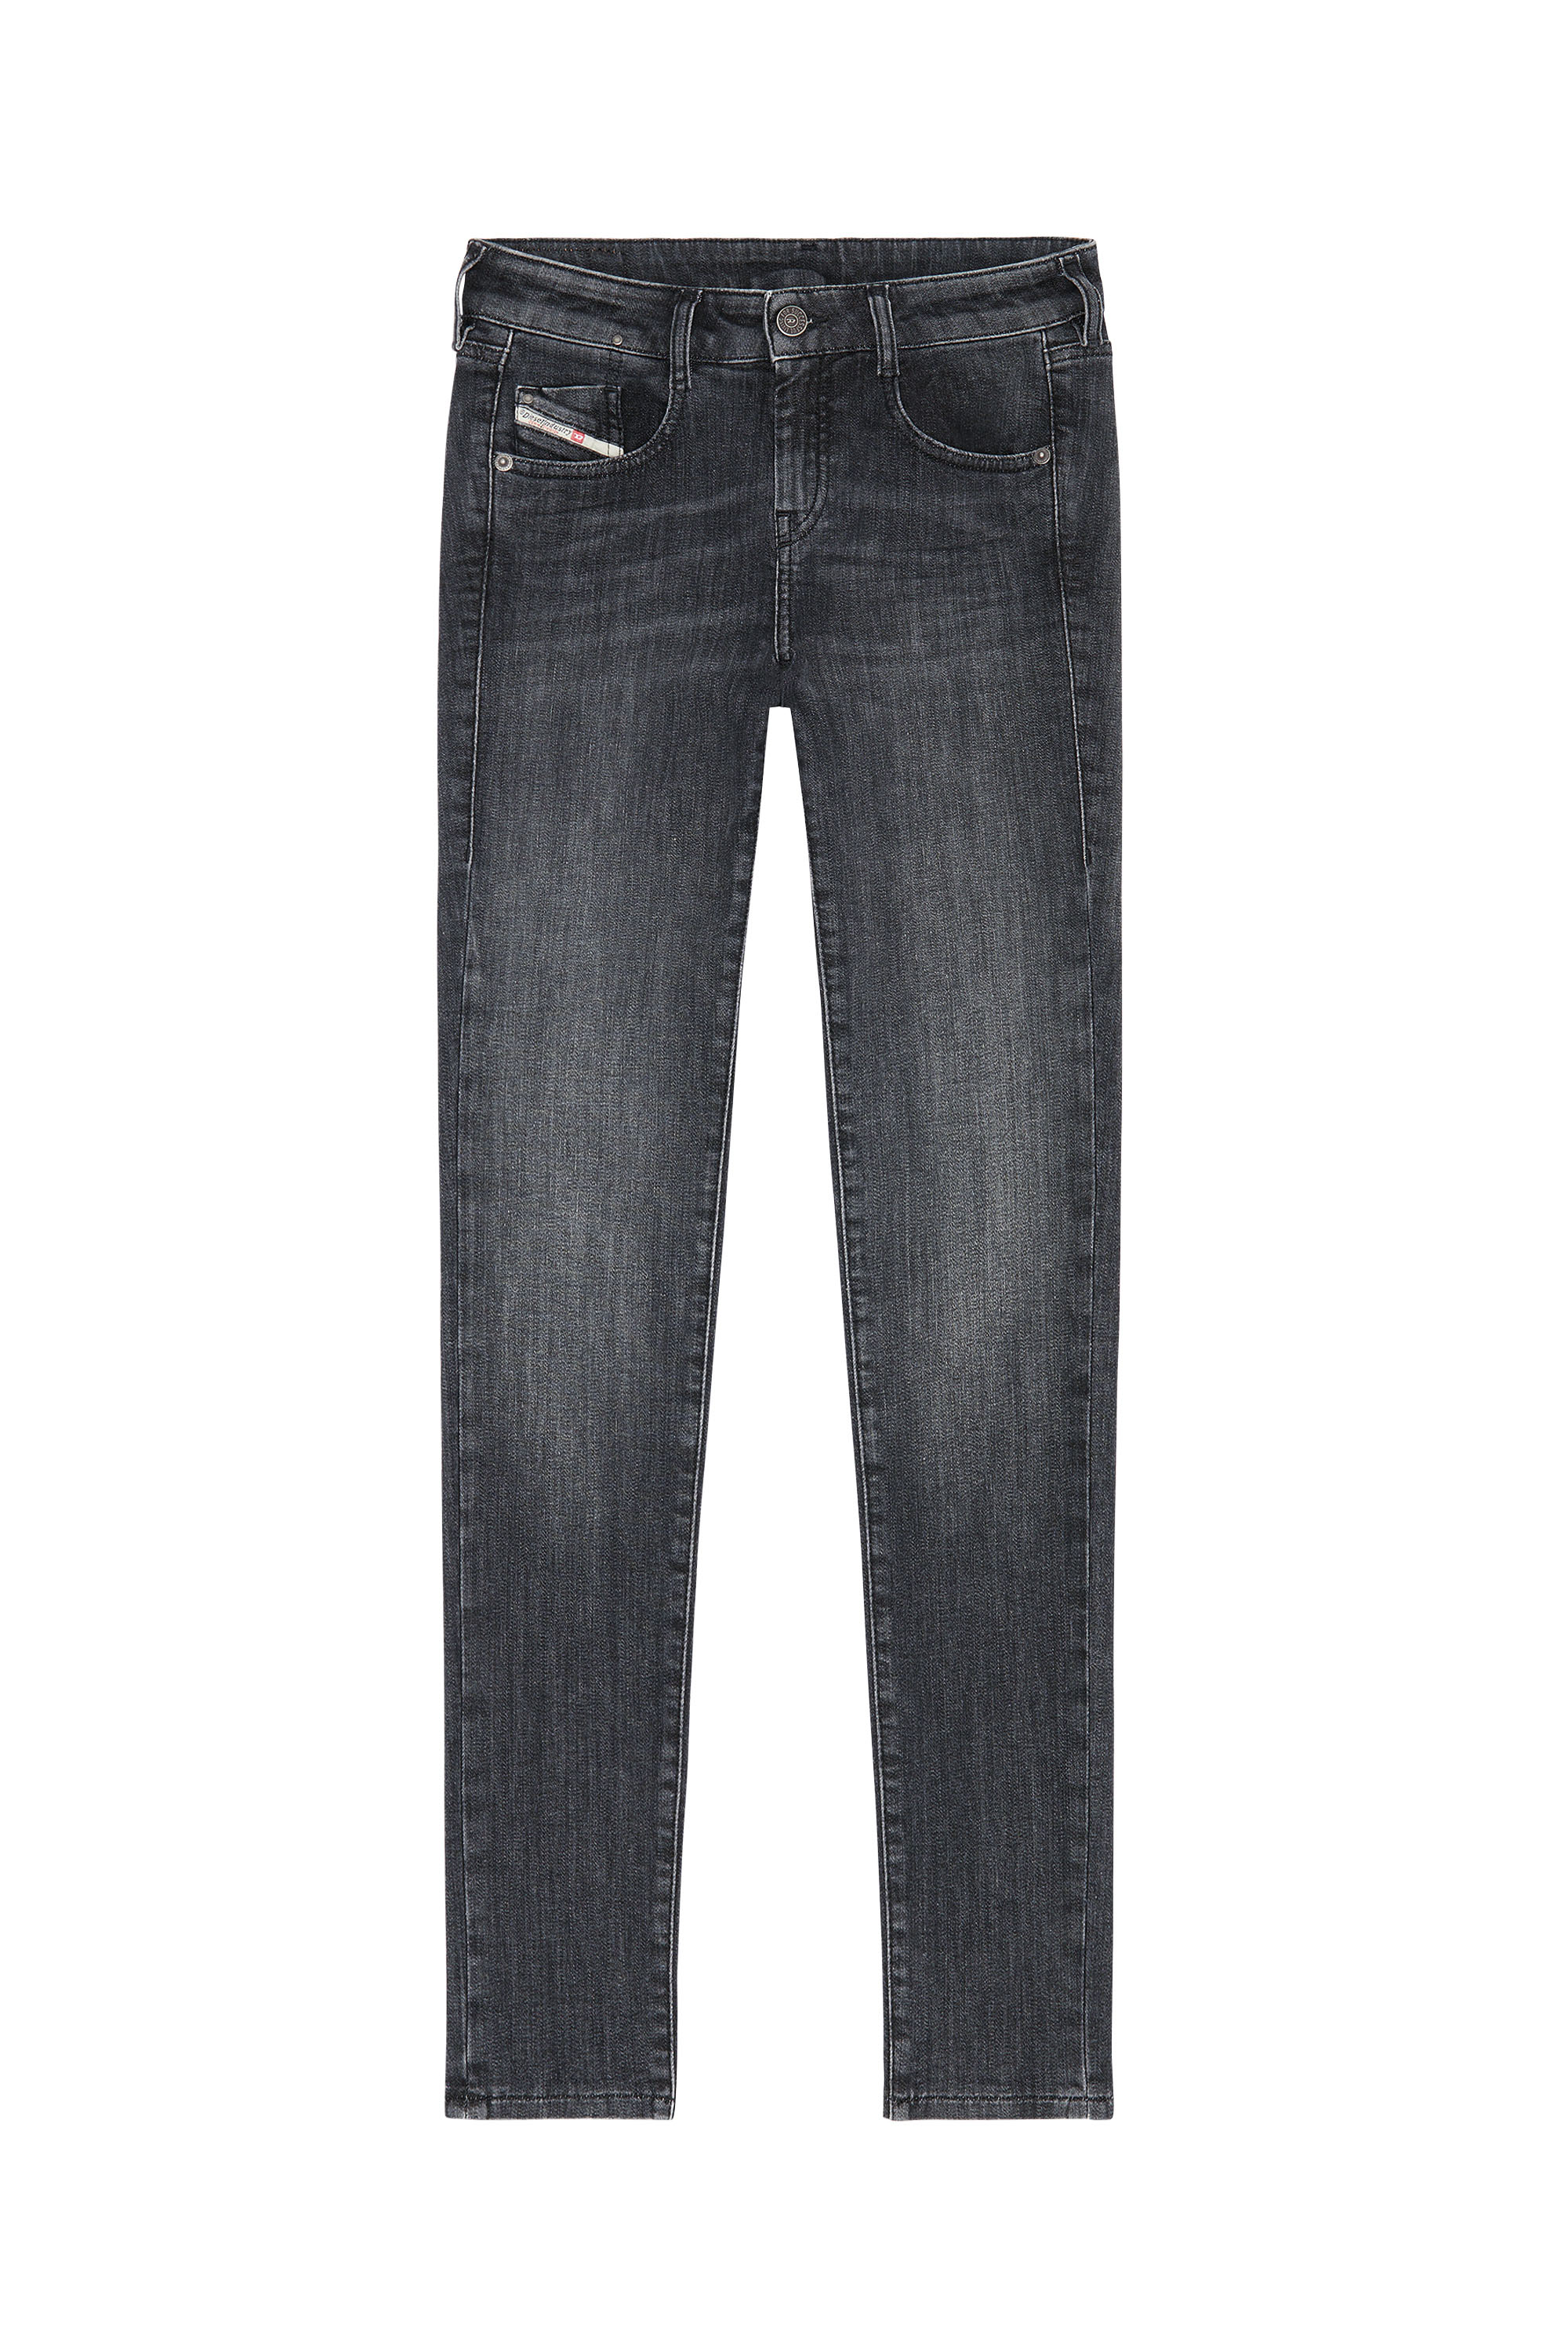 Diesel - D-Ollies JoggJeans® 09D52 Slim, Black/Dark grey - Image 6